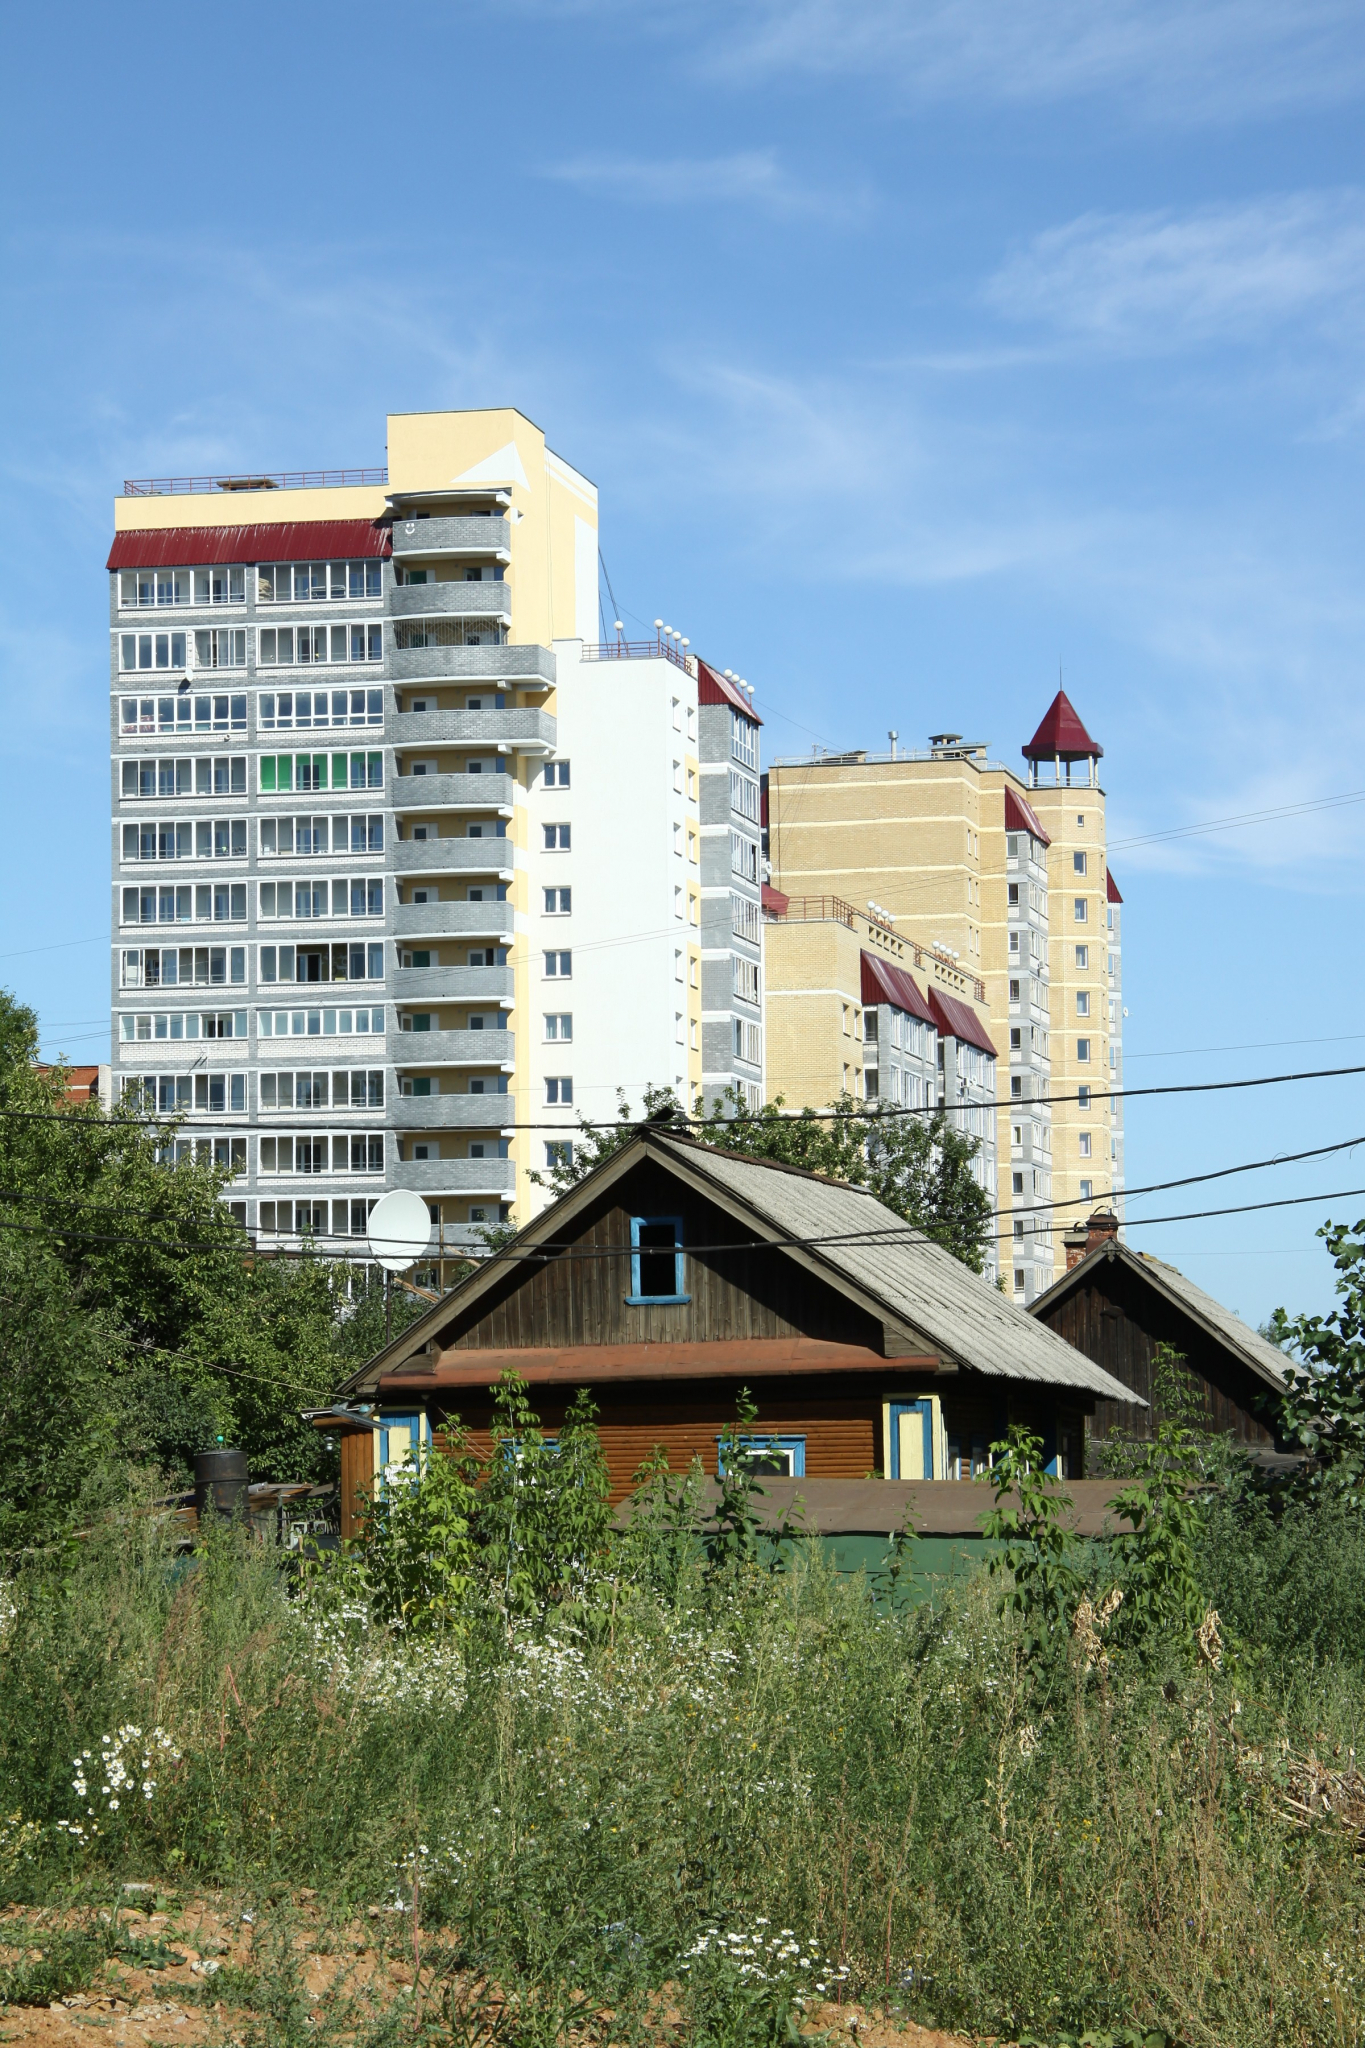 Мордовия покинула «зону риска» по программе расселения из аварийного жилья